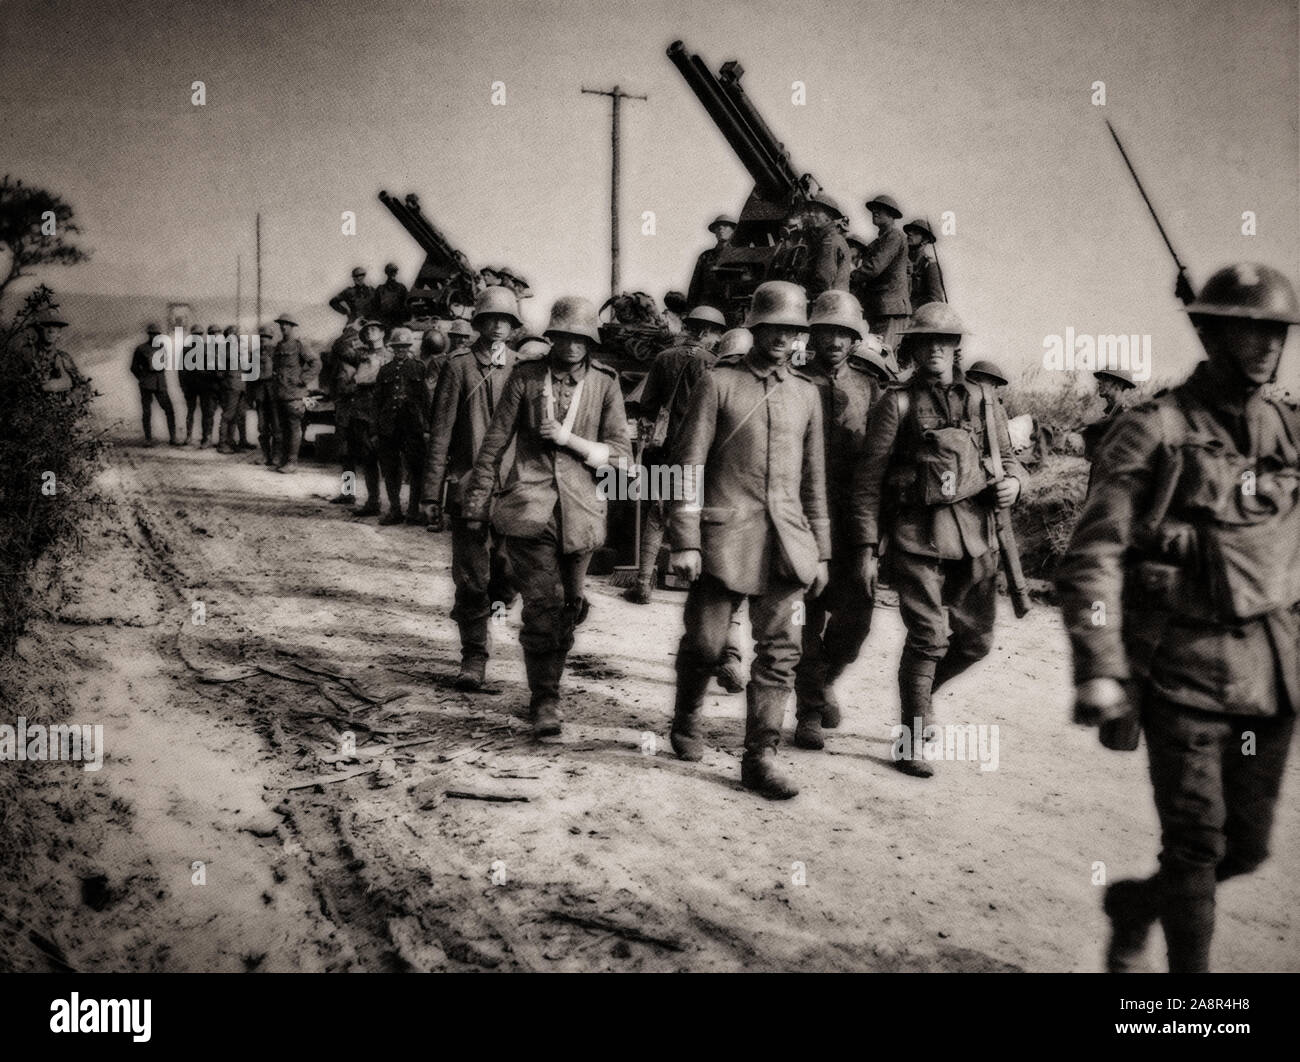 Prisonniers de guerre allemands escortés à l'arrière des lignes sur la journée noire du 8 août 1918. Plus tôt en mars 1918, les Allemands lancèrent leur offensive du printemps, composé de quatre principales batailles entre mars et juillet, qui a poussé les Alliés le choc à plus de 50 milles. Tôt le matin du 8 août 1918, l'armée allemande, épuisés et épuisé par des mois d'attaque, ont été pris complètement par surprise quand la IV armée britannique attaqué et, à la fin de la journée, a frappé un trou 15 milles de large à l'avant. Banque D'Images